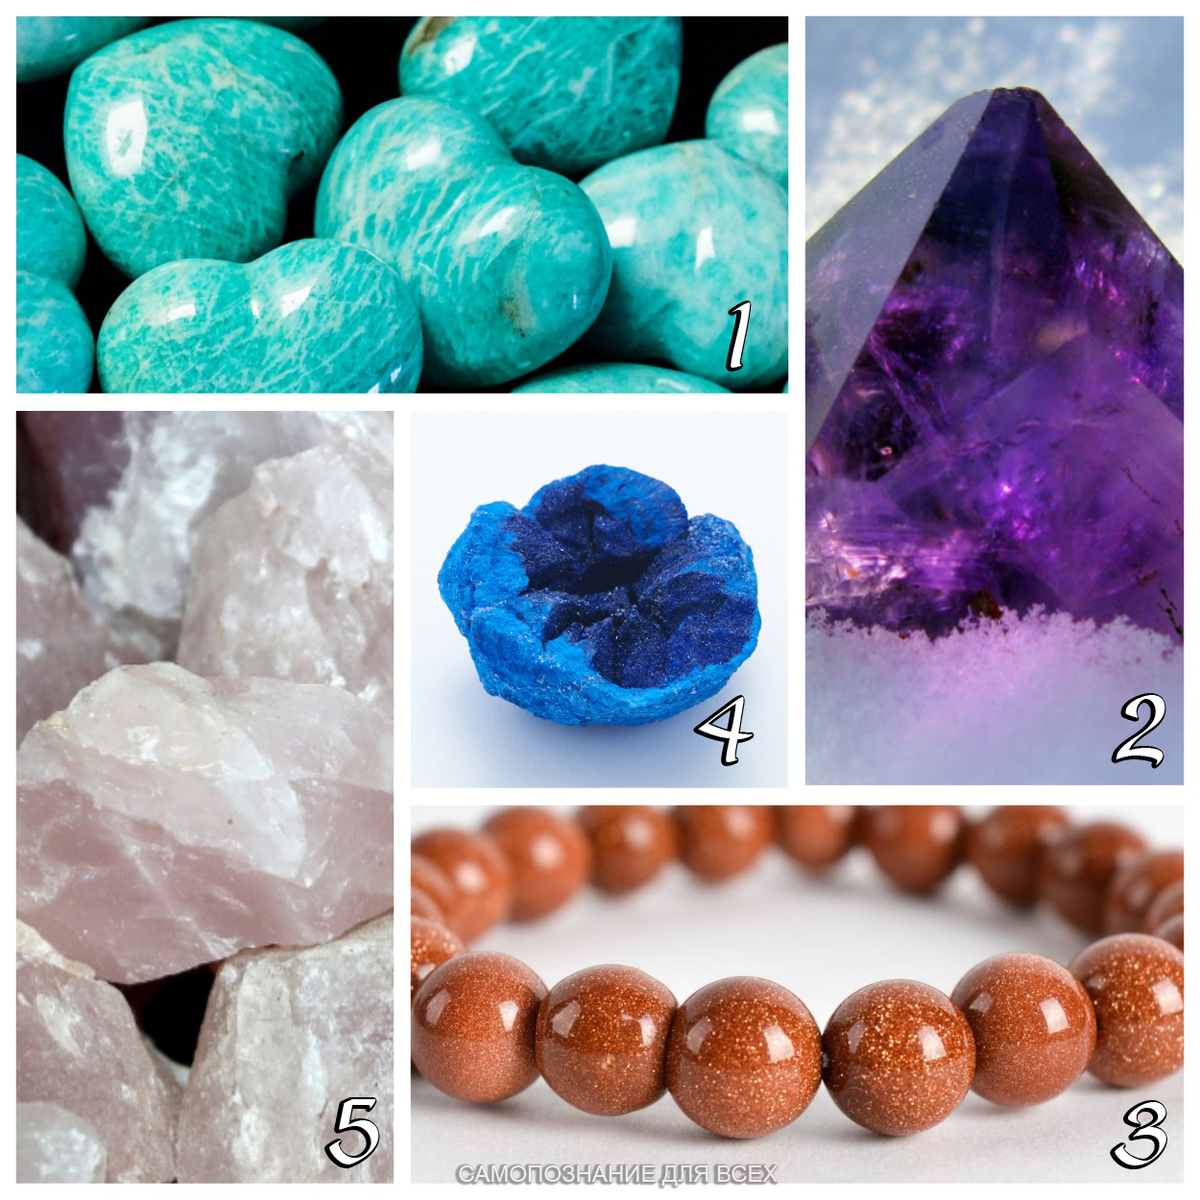 Внимательно посмотрите на изображение пяти кристаллов. Выберите тот, который притягивает вас сильнее остальных. Уверены в своем выборе?